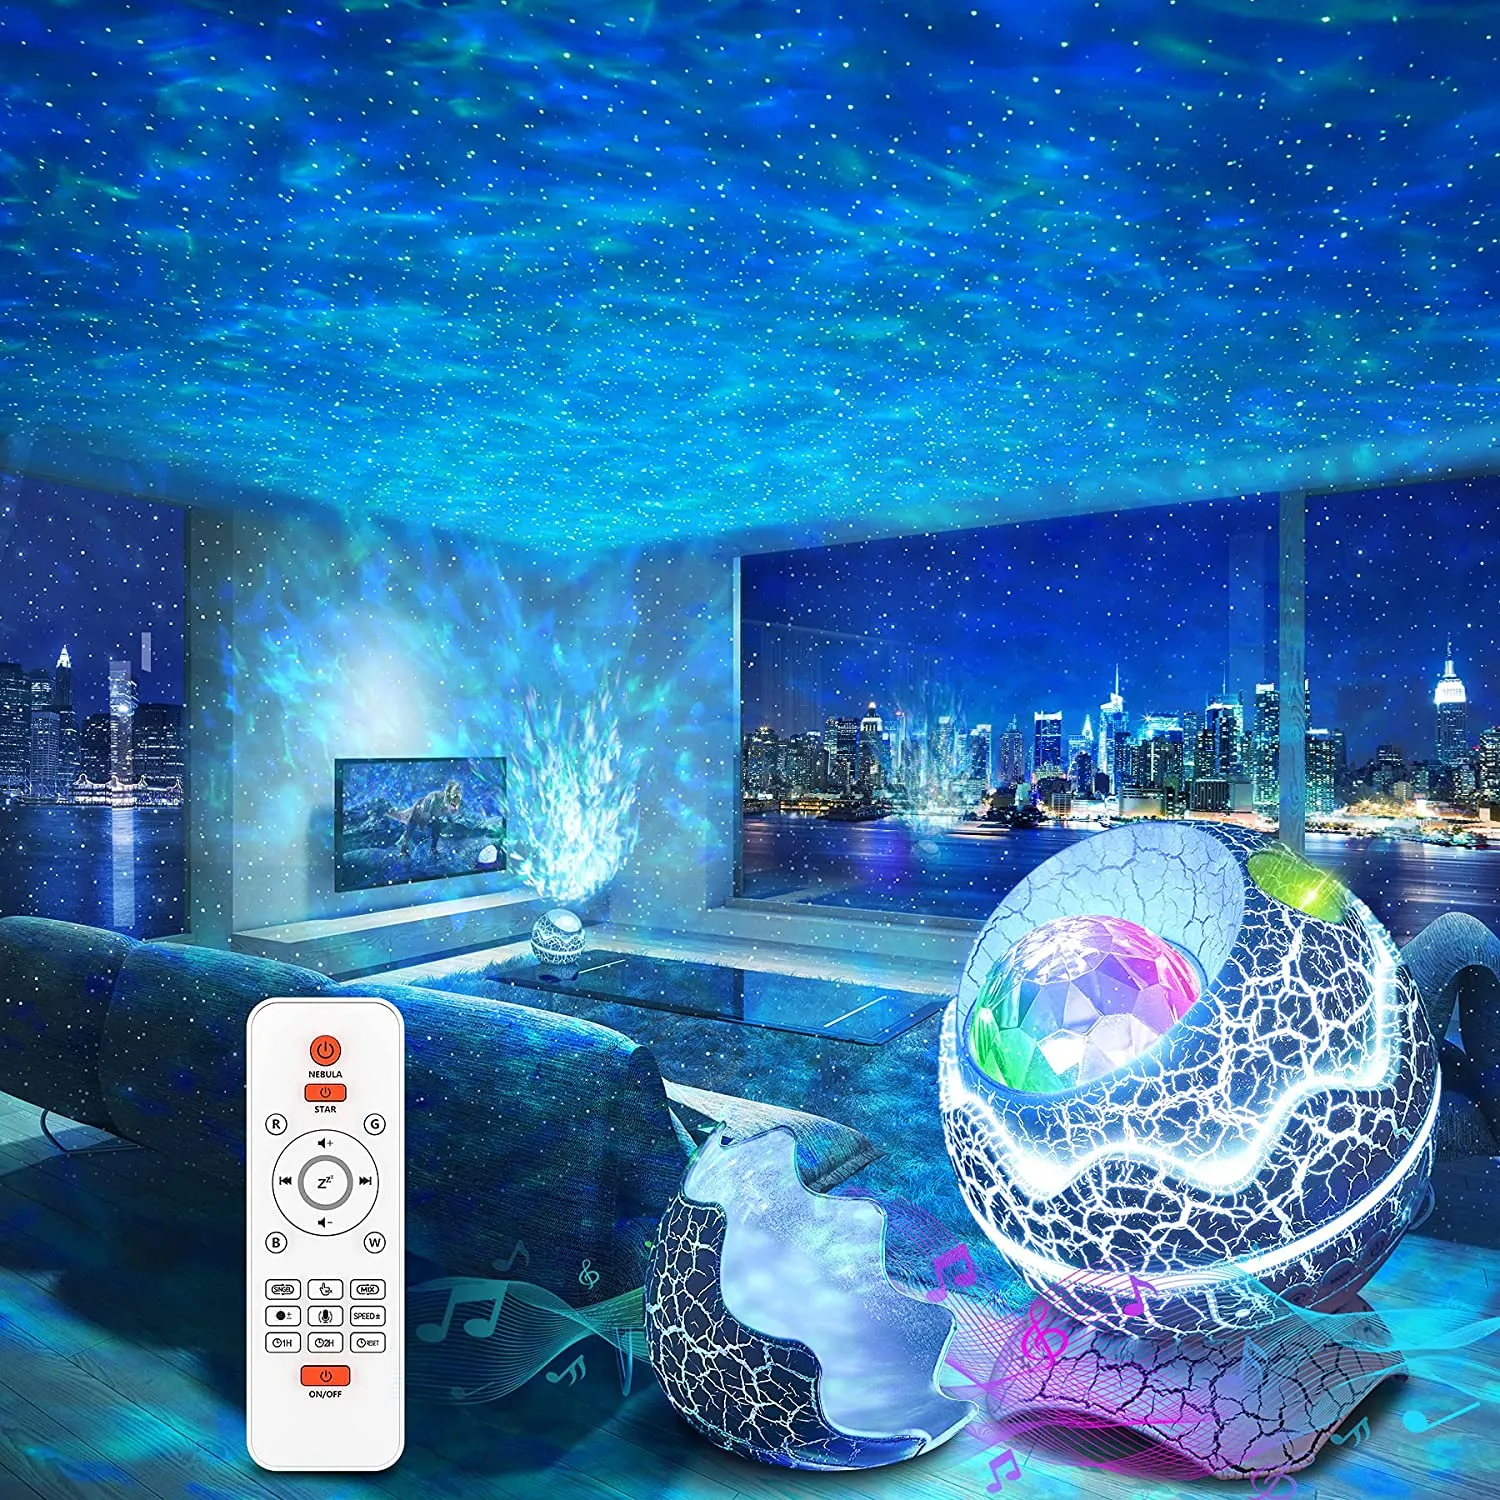 USB Star Night Light Musica Onda d'acqua stellata Luci LED Bluetooth remoto Proiettore rotante colorato Lampada decorativa attivata dal suono301I